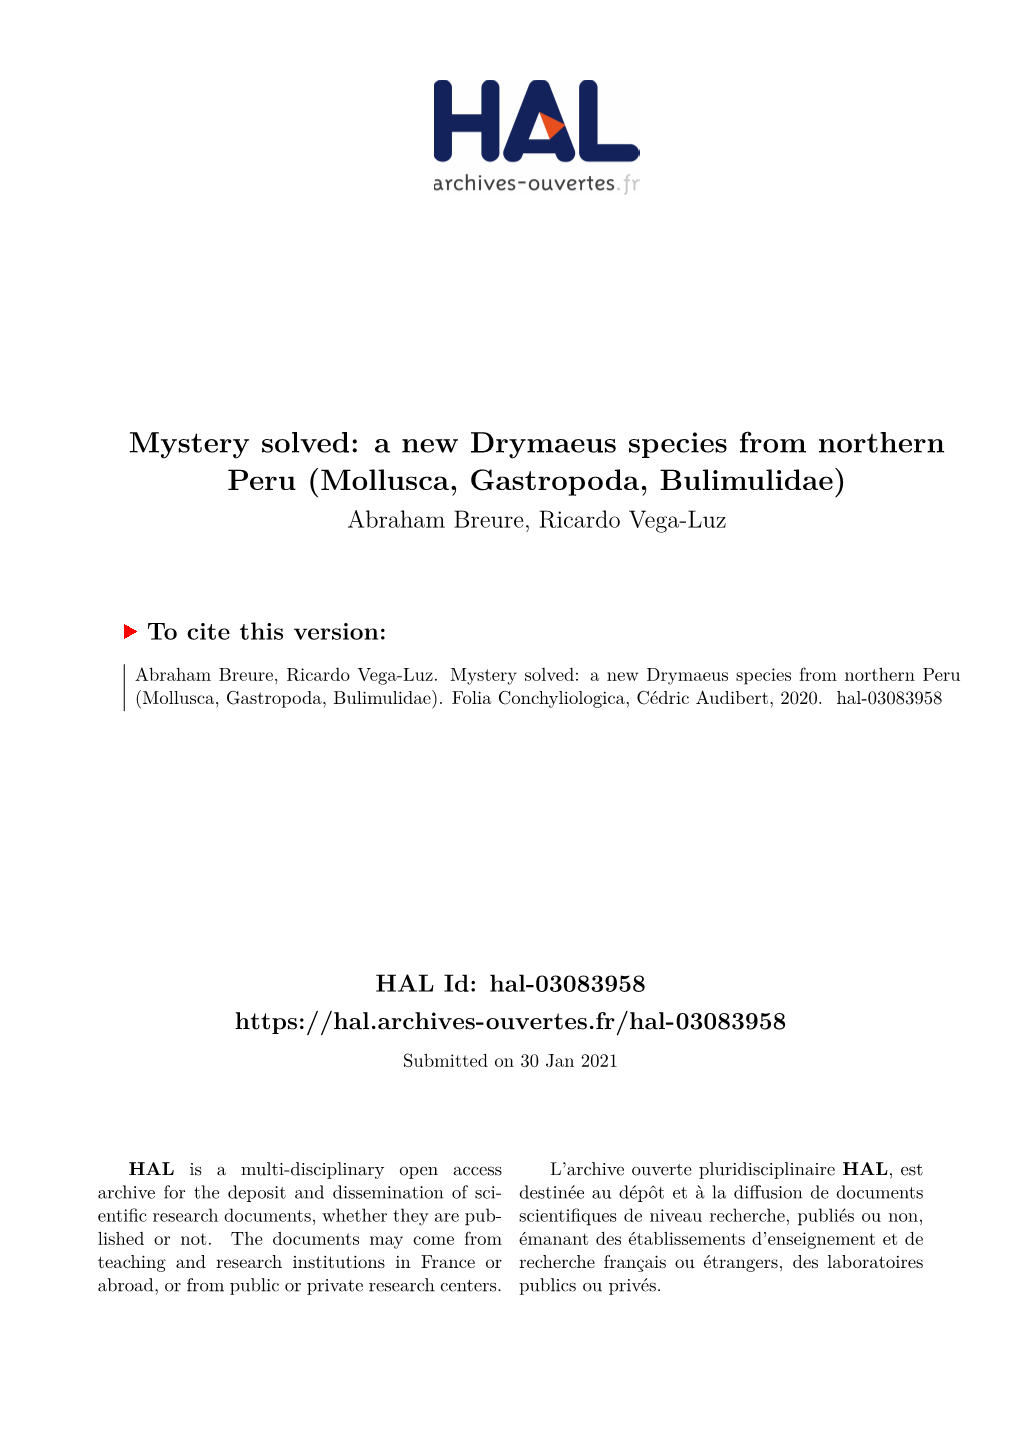 Mystery Solved: a New Drymaeus Species from Northern Peru (Mollusca, Gastropoda, Bulimulidae) Abraham Breure, Ricardo Vega-Luz